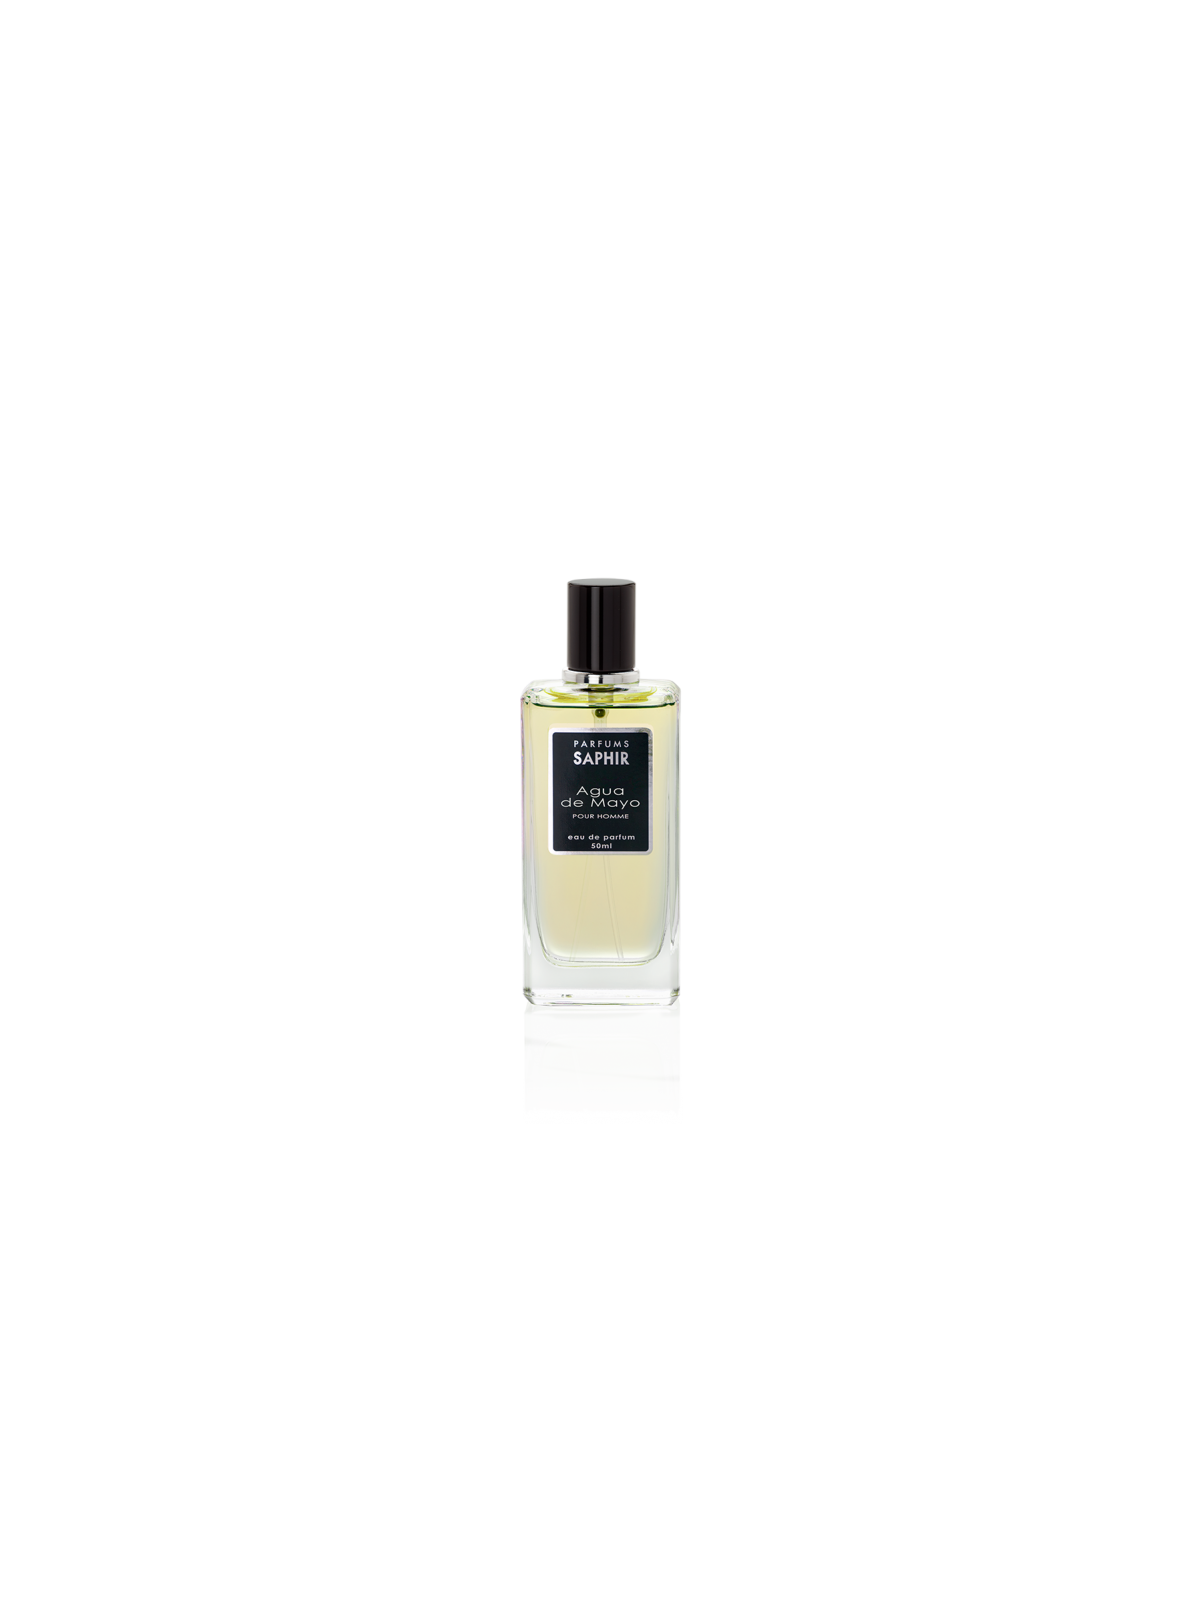 Comprar Perfume Saphir Agua de Mayo Hombre 50ML. en Perfumes para hombre por sólo 4,95 € o un precio específico de 4,95 € en Thalie Care